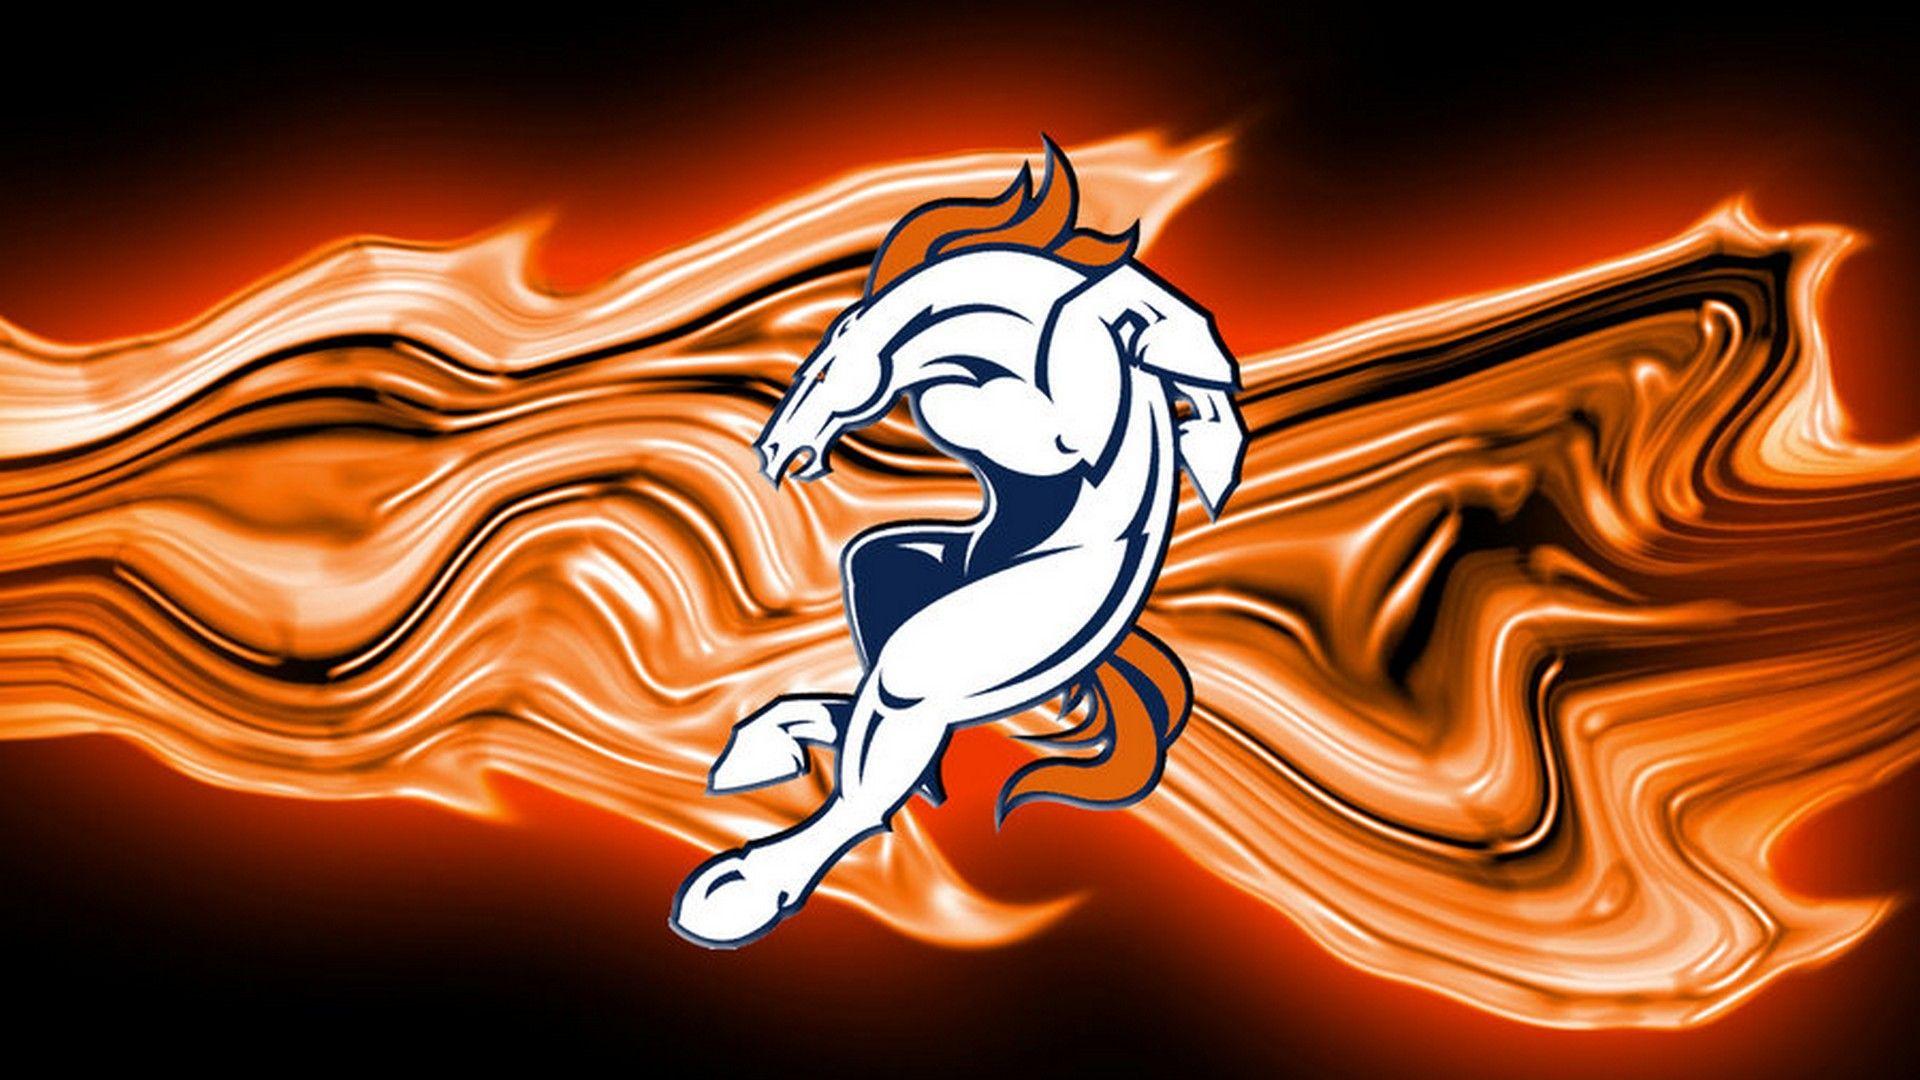 Denver Broncos Background HD NFL Football Wallpaper